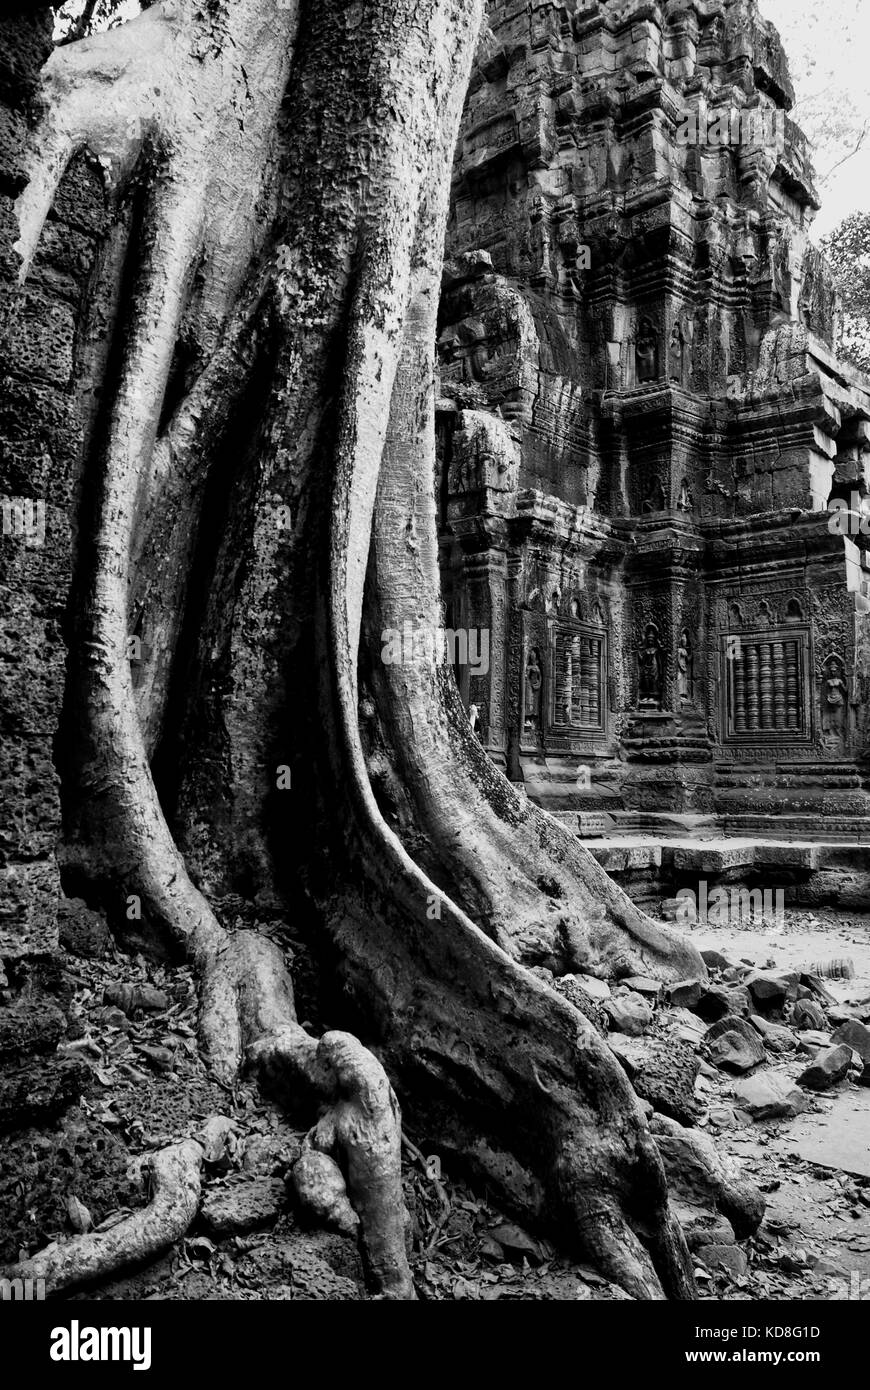 Los templos de Angkor Wat, cerca de Siem Reap, Camboya ha sido designado como un sitio de patrimonio mundial de la unesco Foto de stock